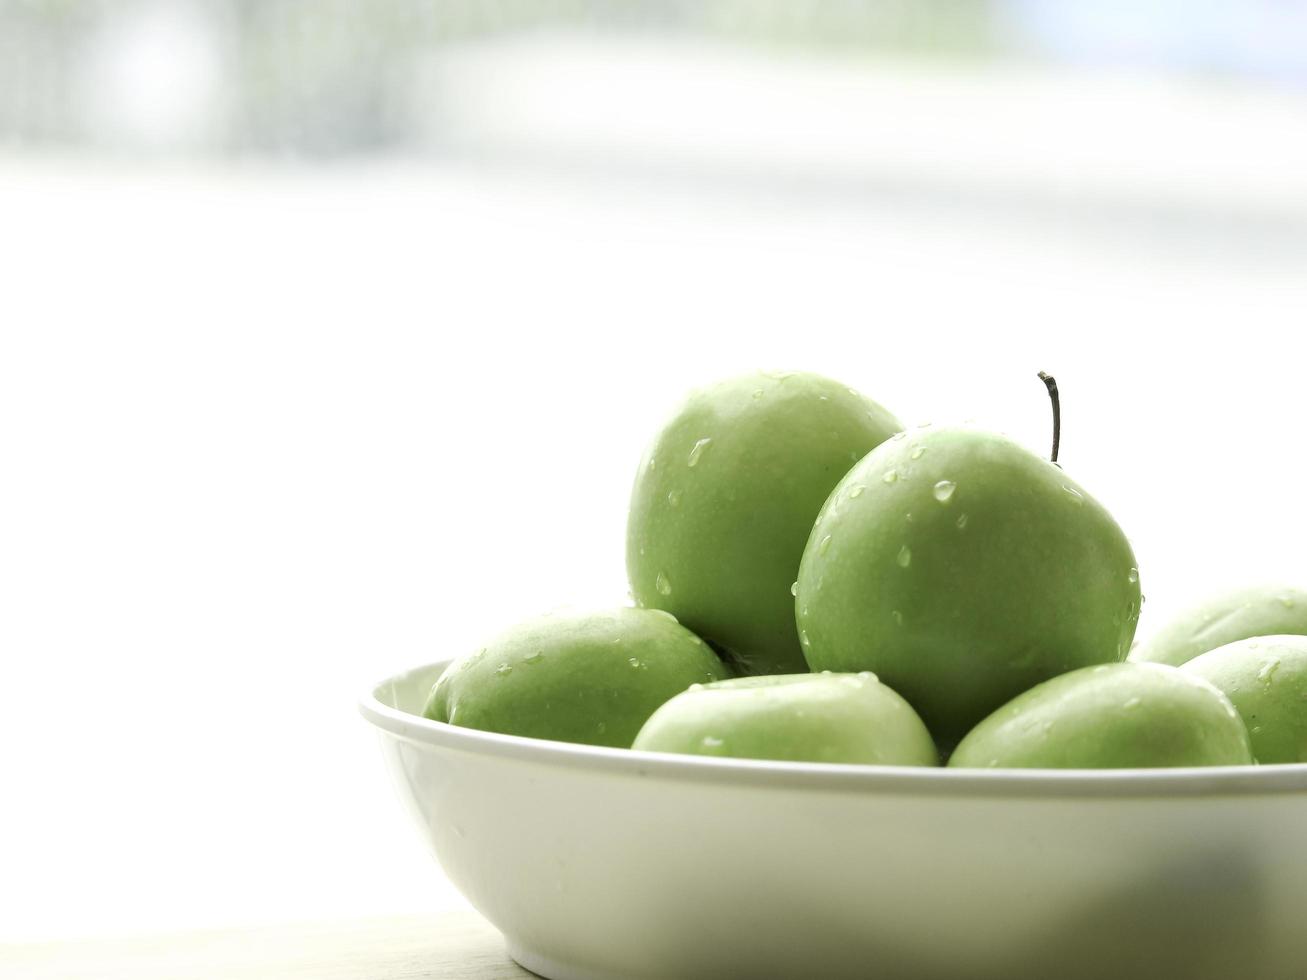 mogen grönt äpple rå frukt i vit skål på träbord, hälsosamma ekologiska färskvaror foto